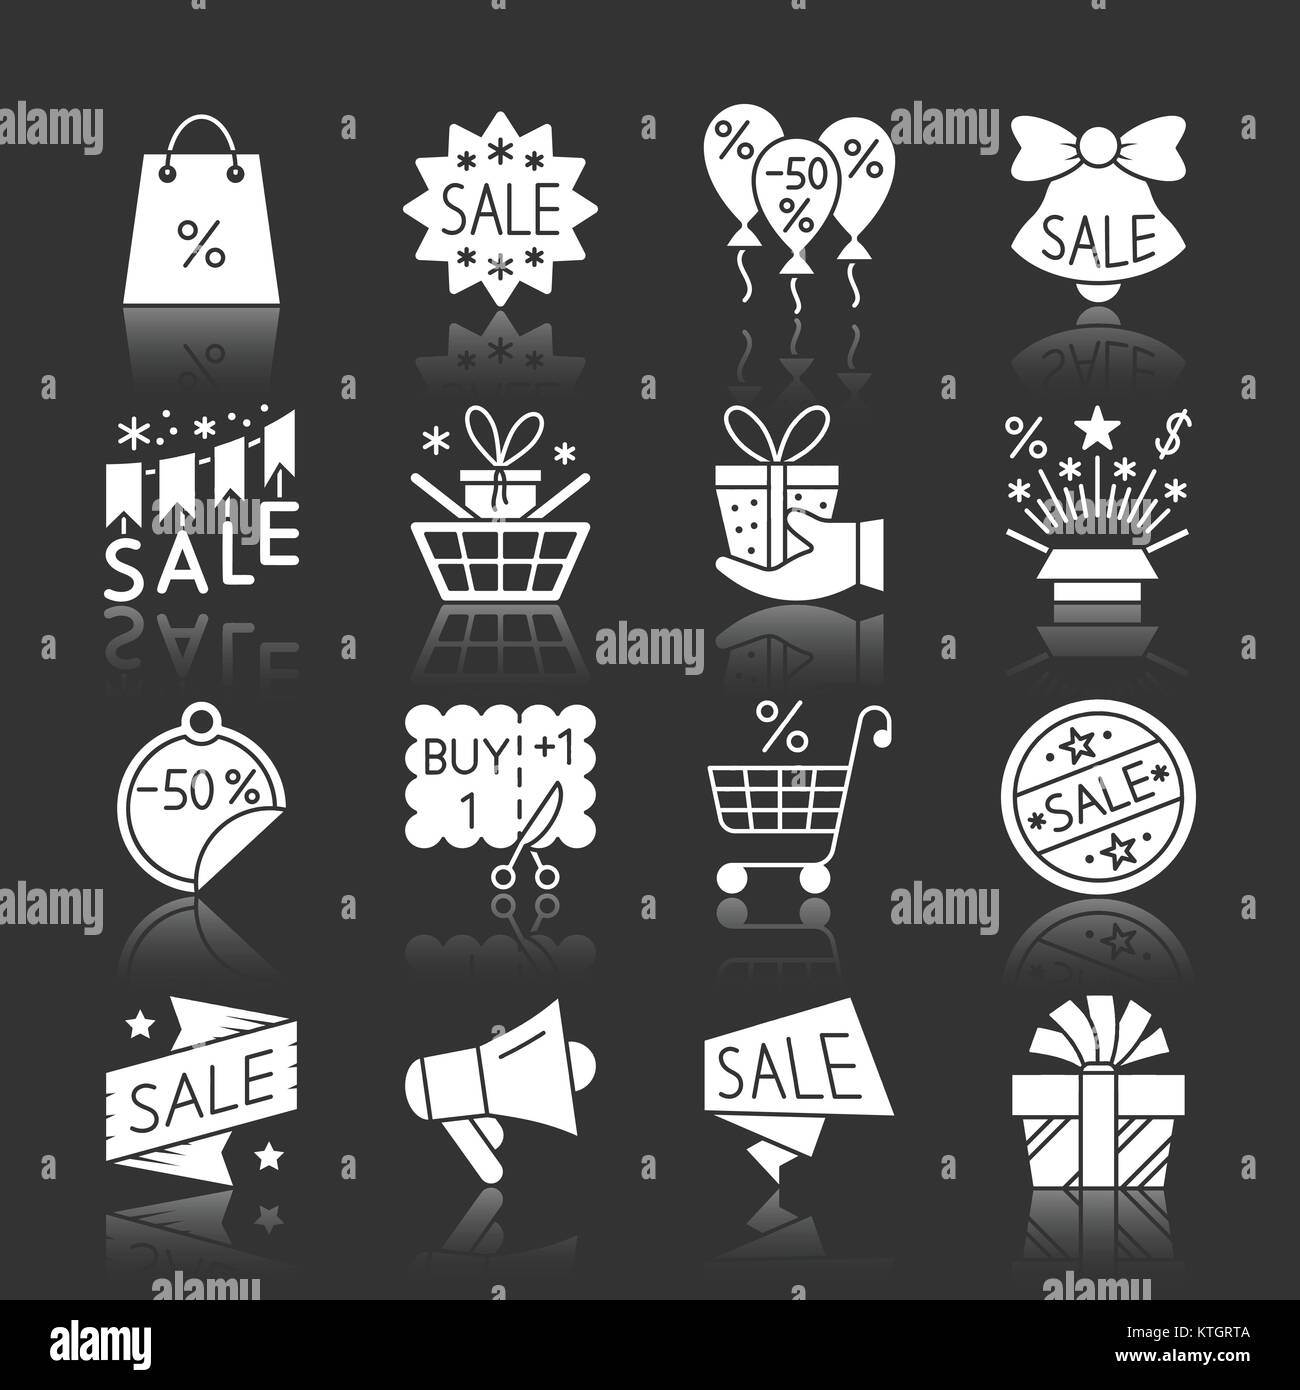 Weihnachtszeit Verkauf weiße Silhouette mit Reflexion Icon Set. Neues Jahr monochrome flache Design symbol Collection. Abstand einfache Pack Web-, Banner-, Stock Vektor